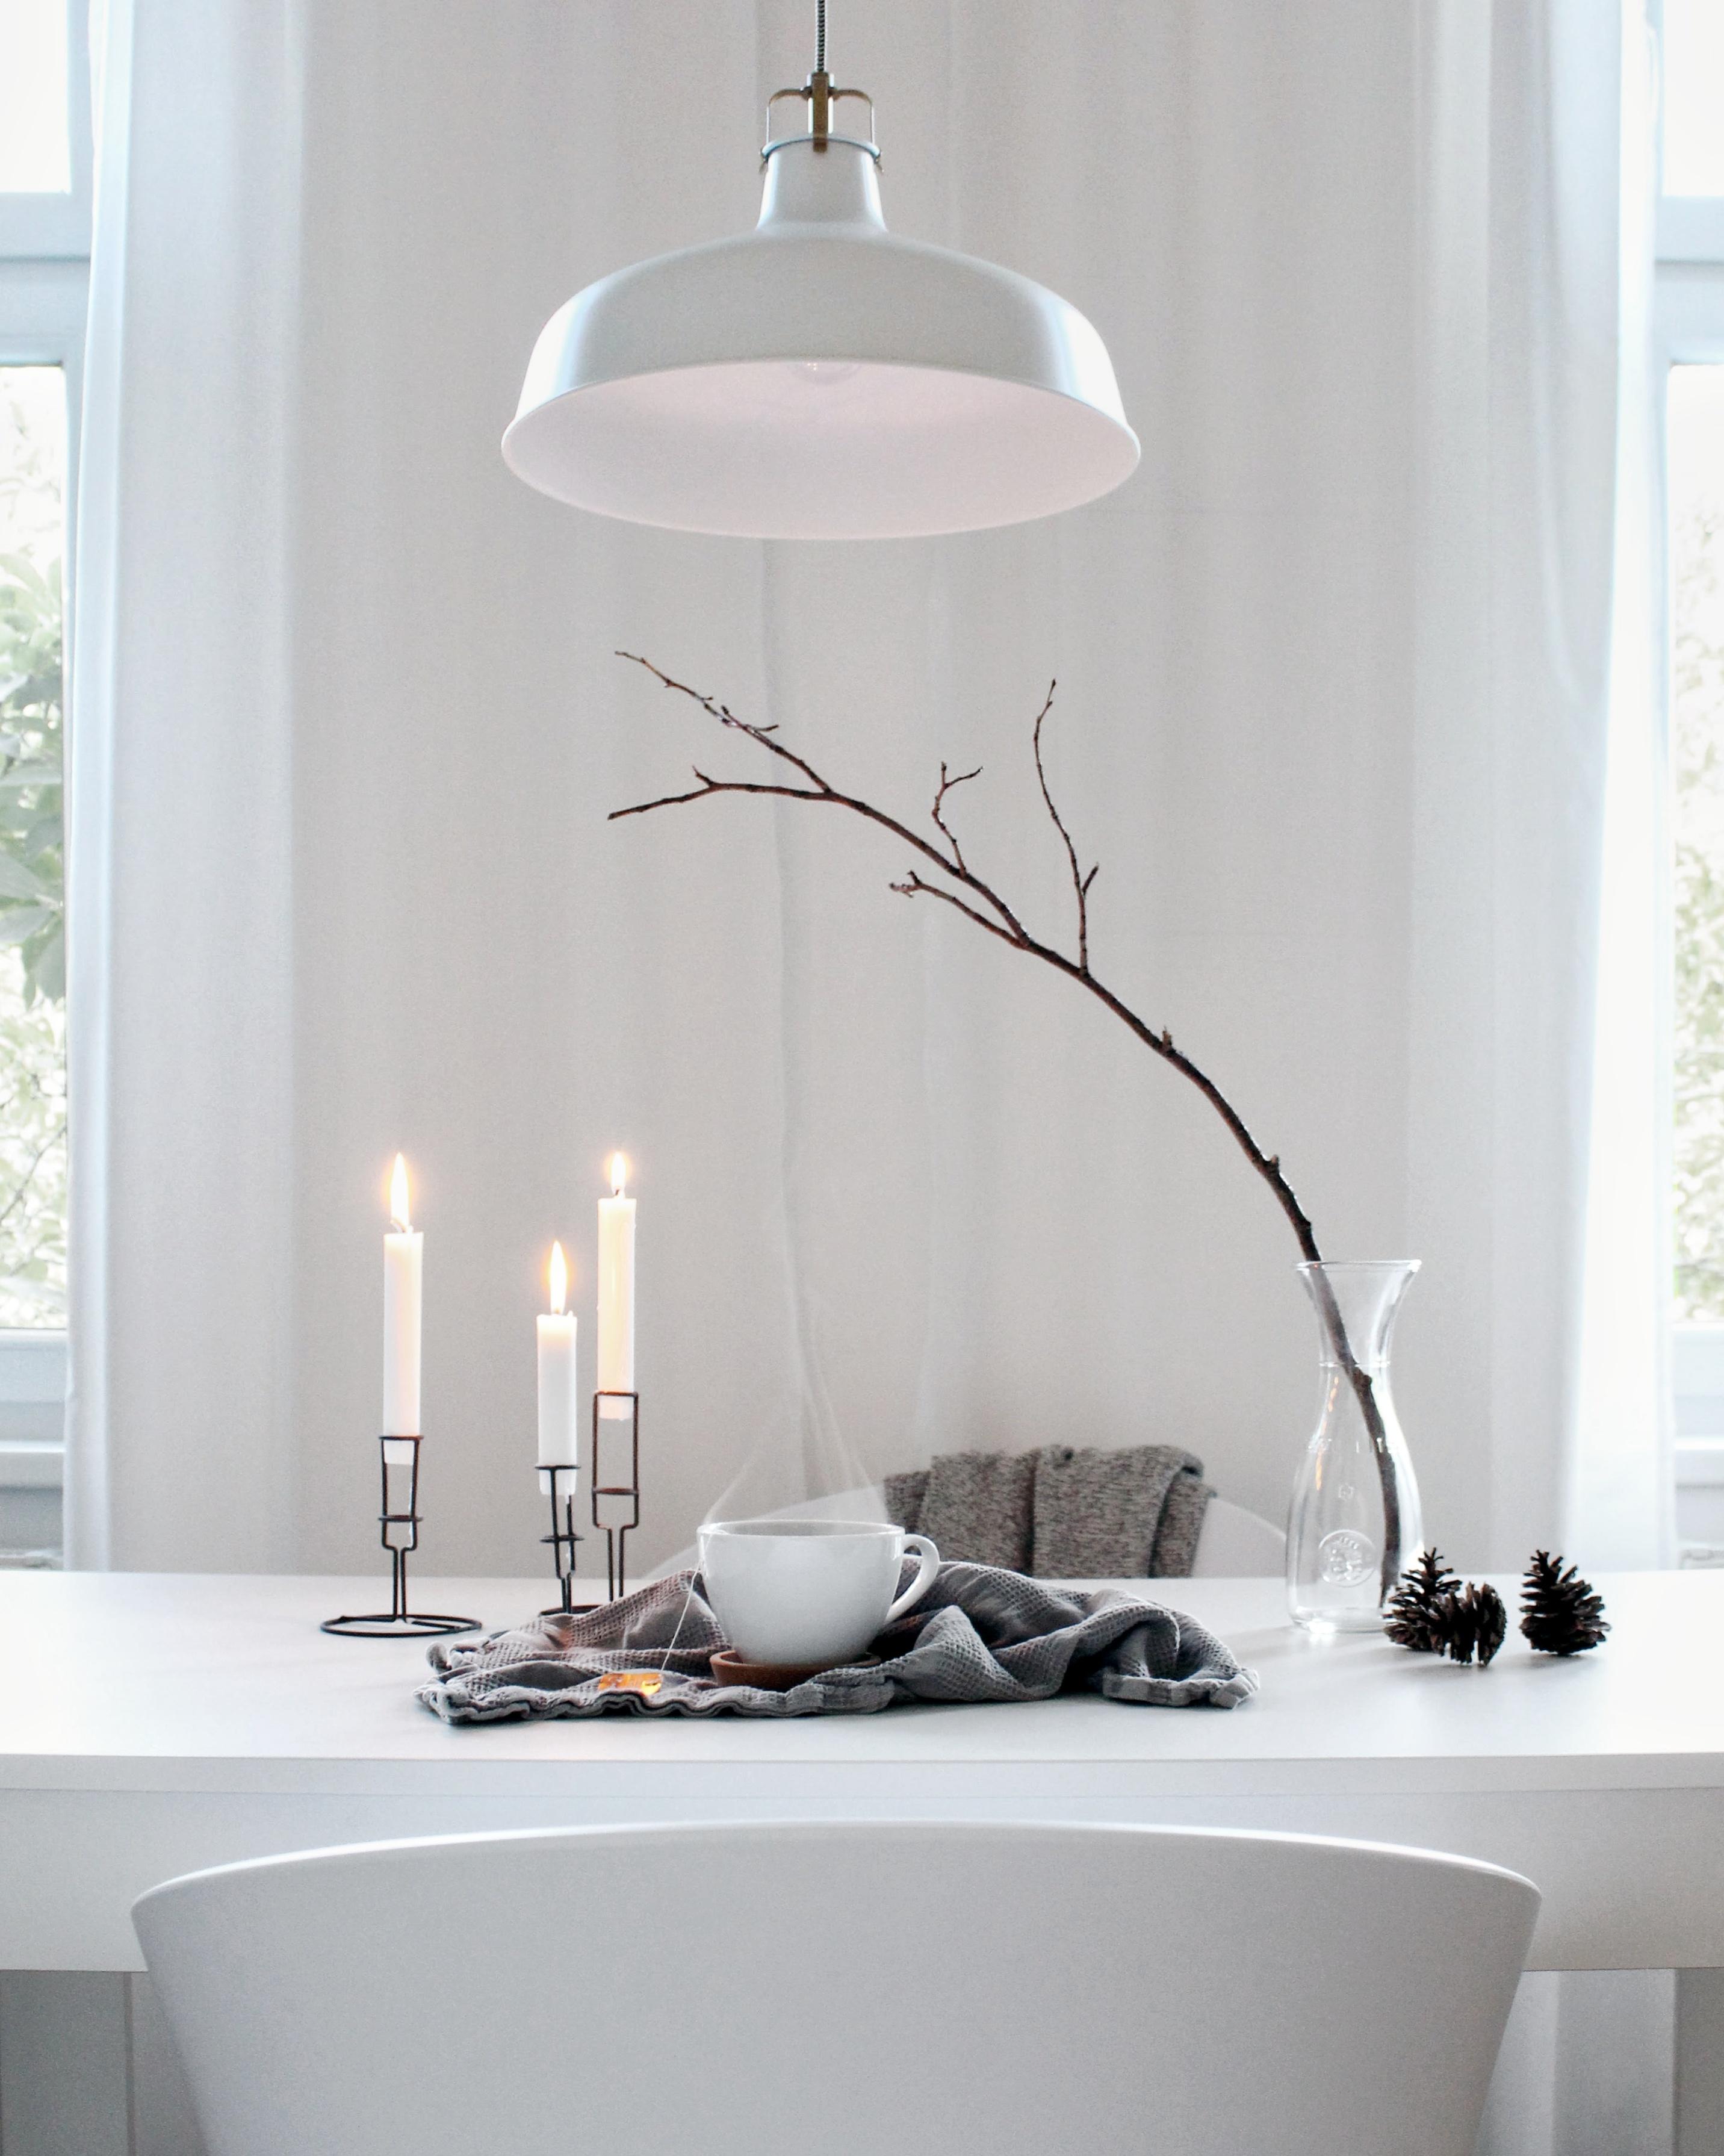 Ein Ast & eine Tasse Tee 🖤 #herbst #tee #interior #weiss #minimalism #skandinavisch #hygge